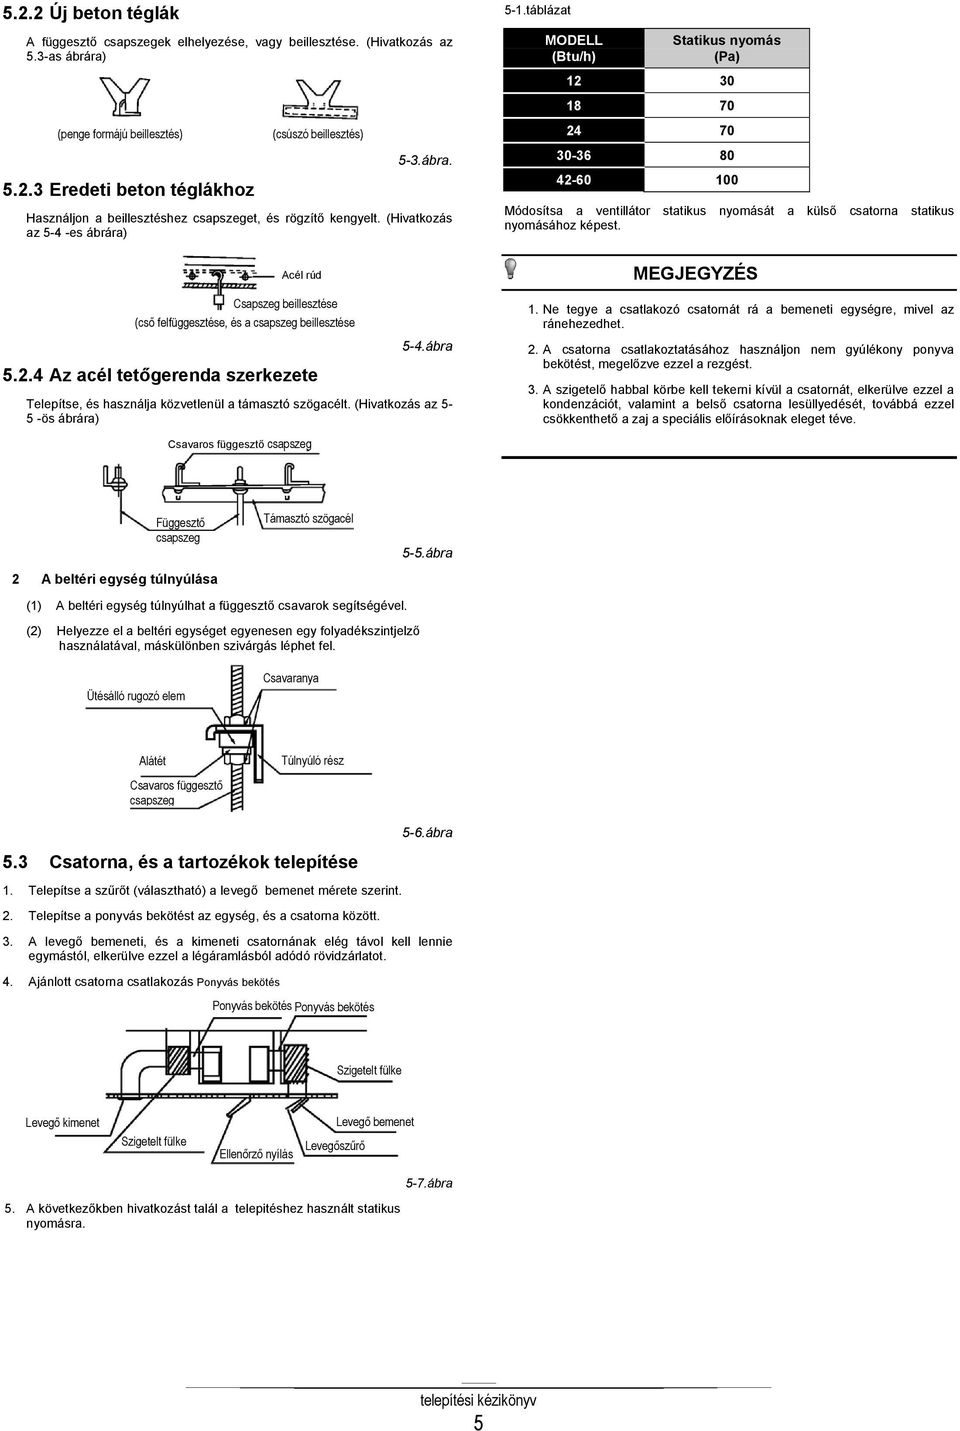 (Hivatkozás az 5-4 -es ábrára) 24 70 30-36 80 42-60 100 Módosítsa a ventillátor statikus nyomását a külső csatorna statikus nyomásához képest.